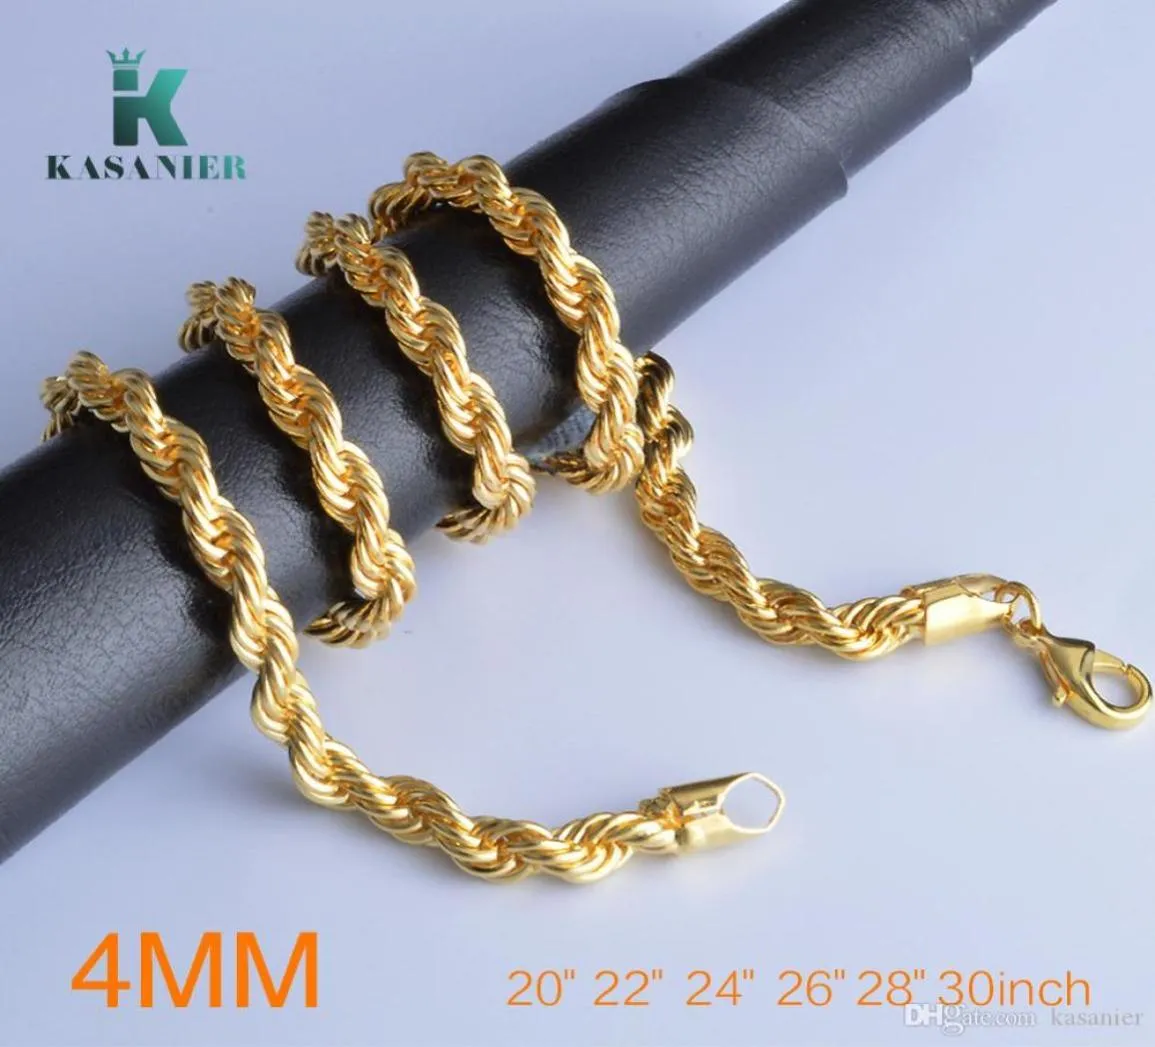 10 pièces 2030 pouces de longueur pour 4mm de largeur collier classique hommes bijoux collier corde fine chaîne en or et argent Fashion6879200